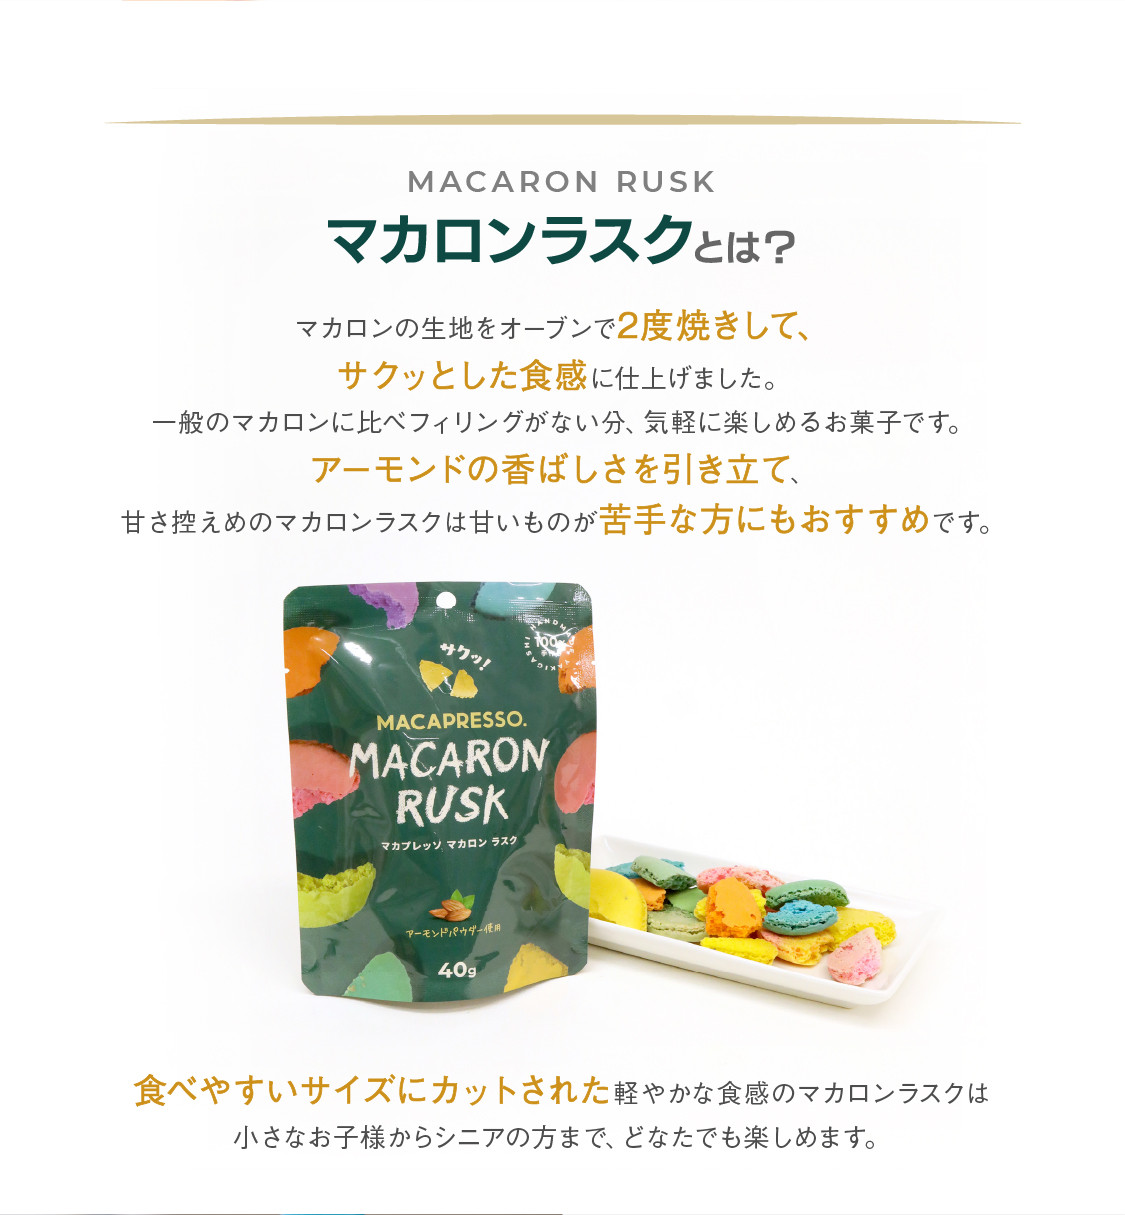 マカロンラスク(フレーク) マカロンクッキー MACAPRESSO 3